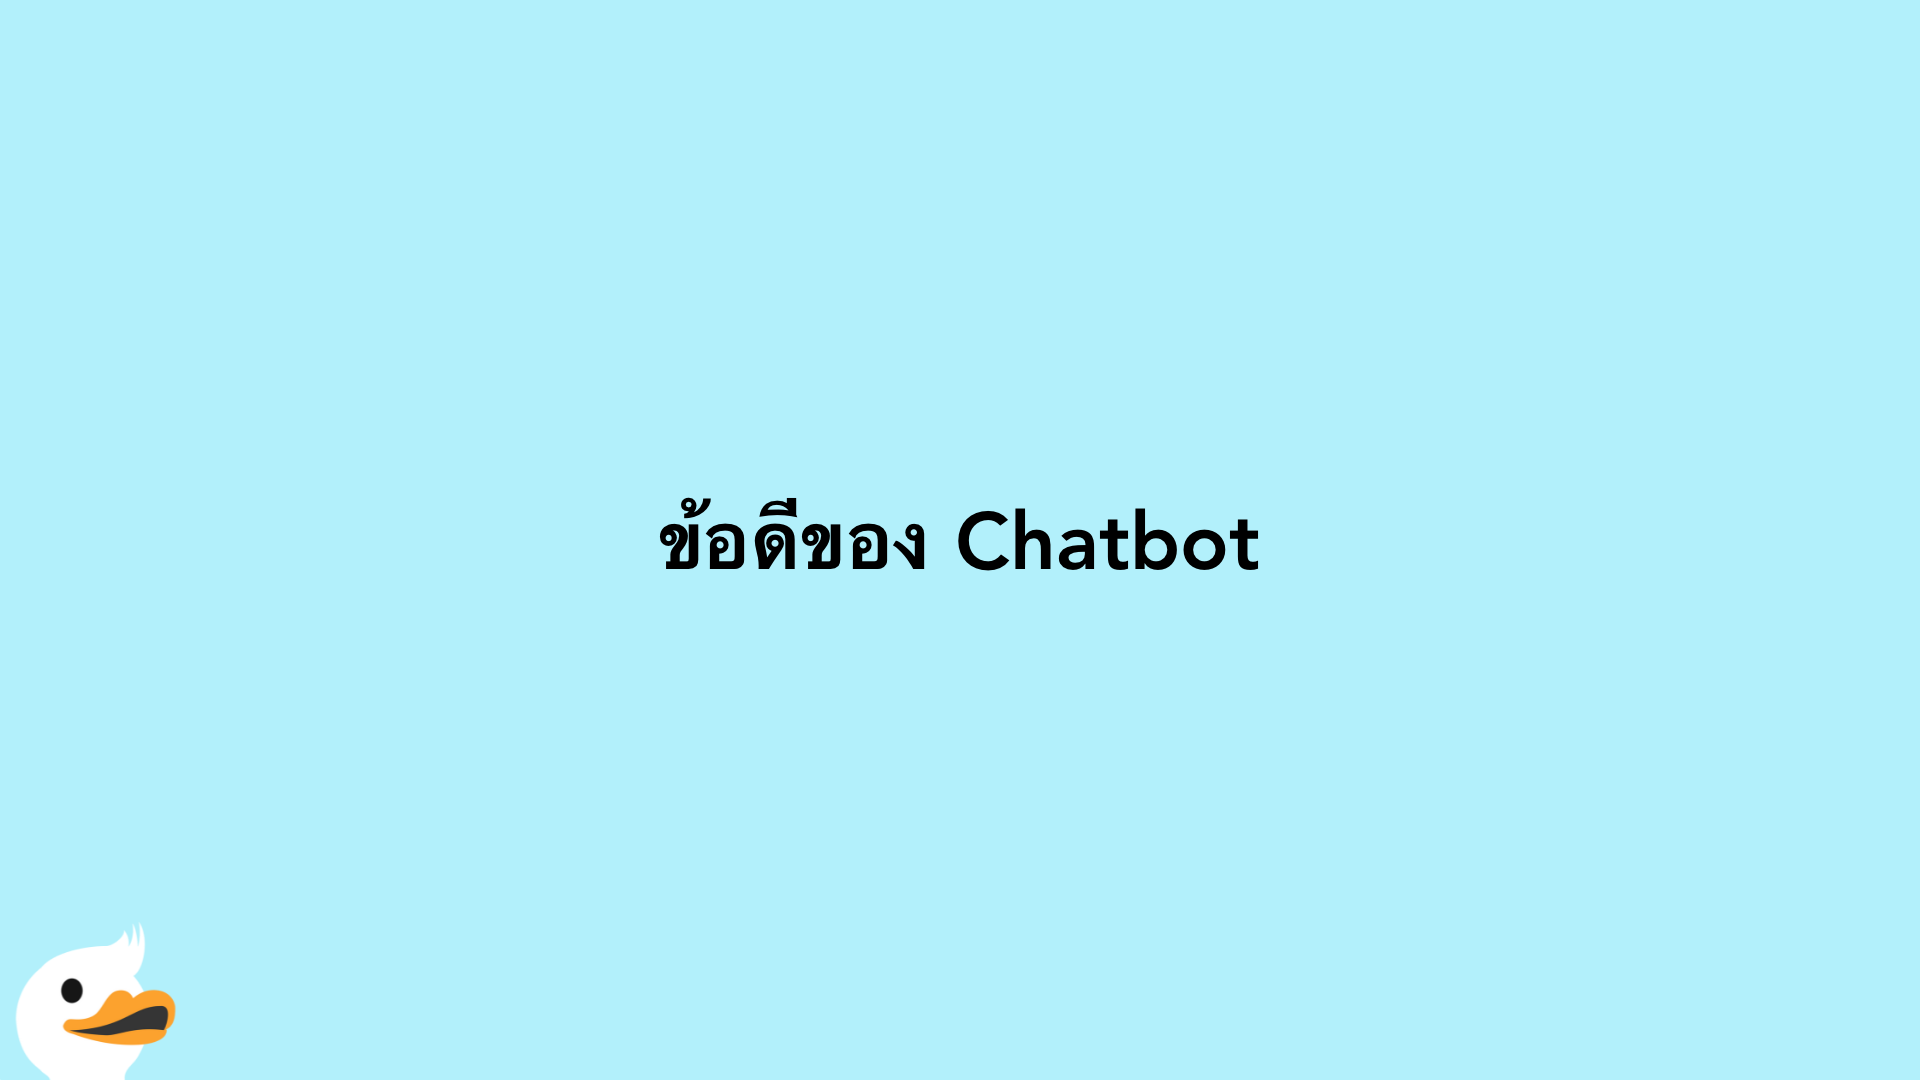 ข้อดีของ Chatbot